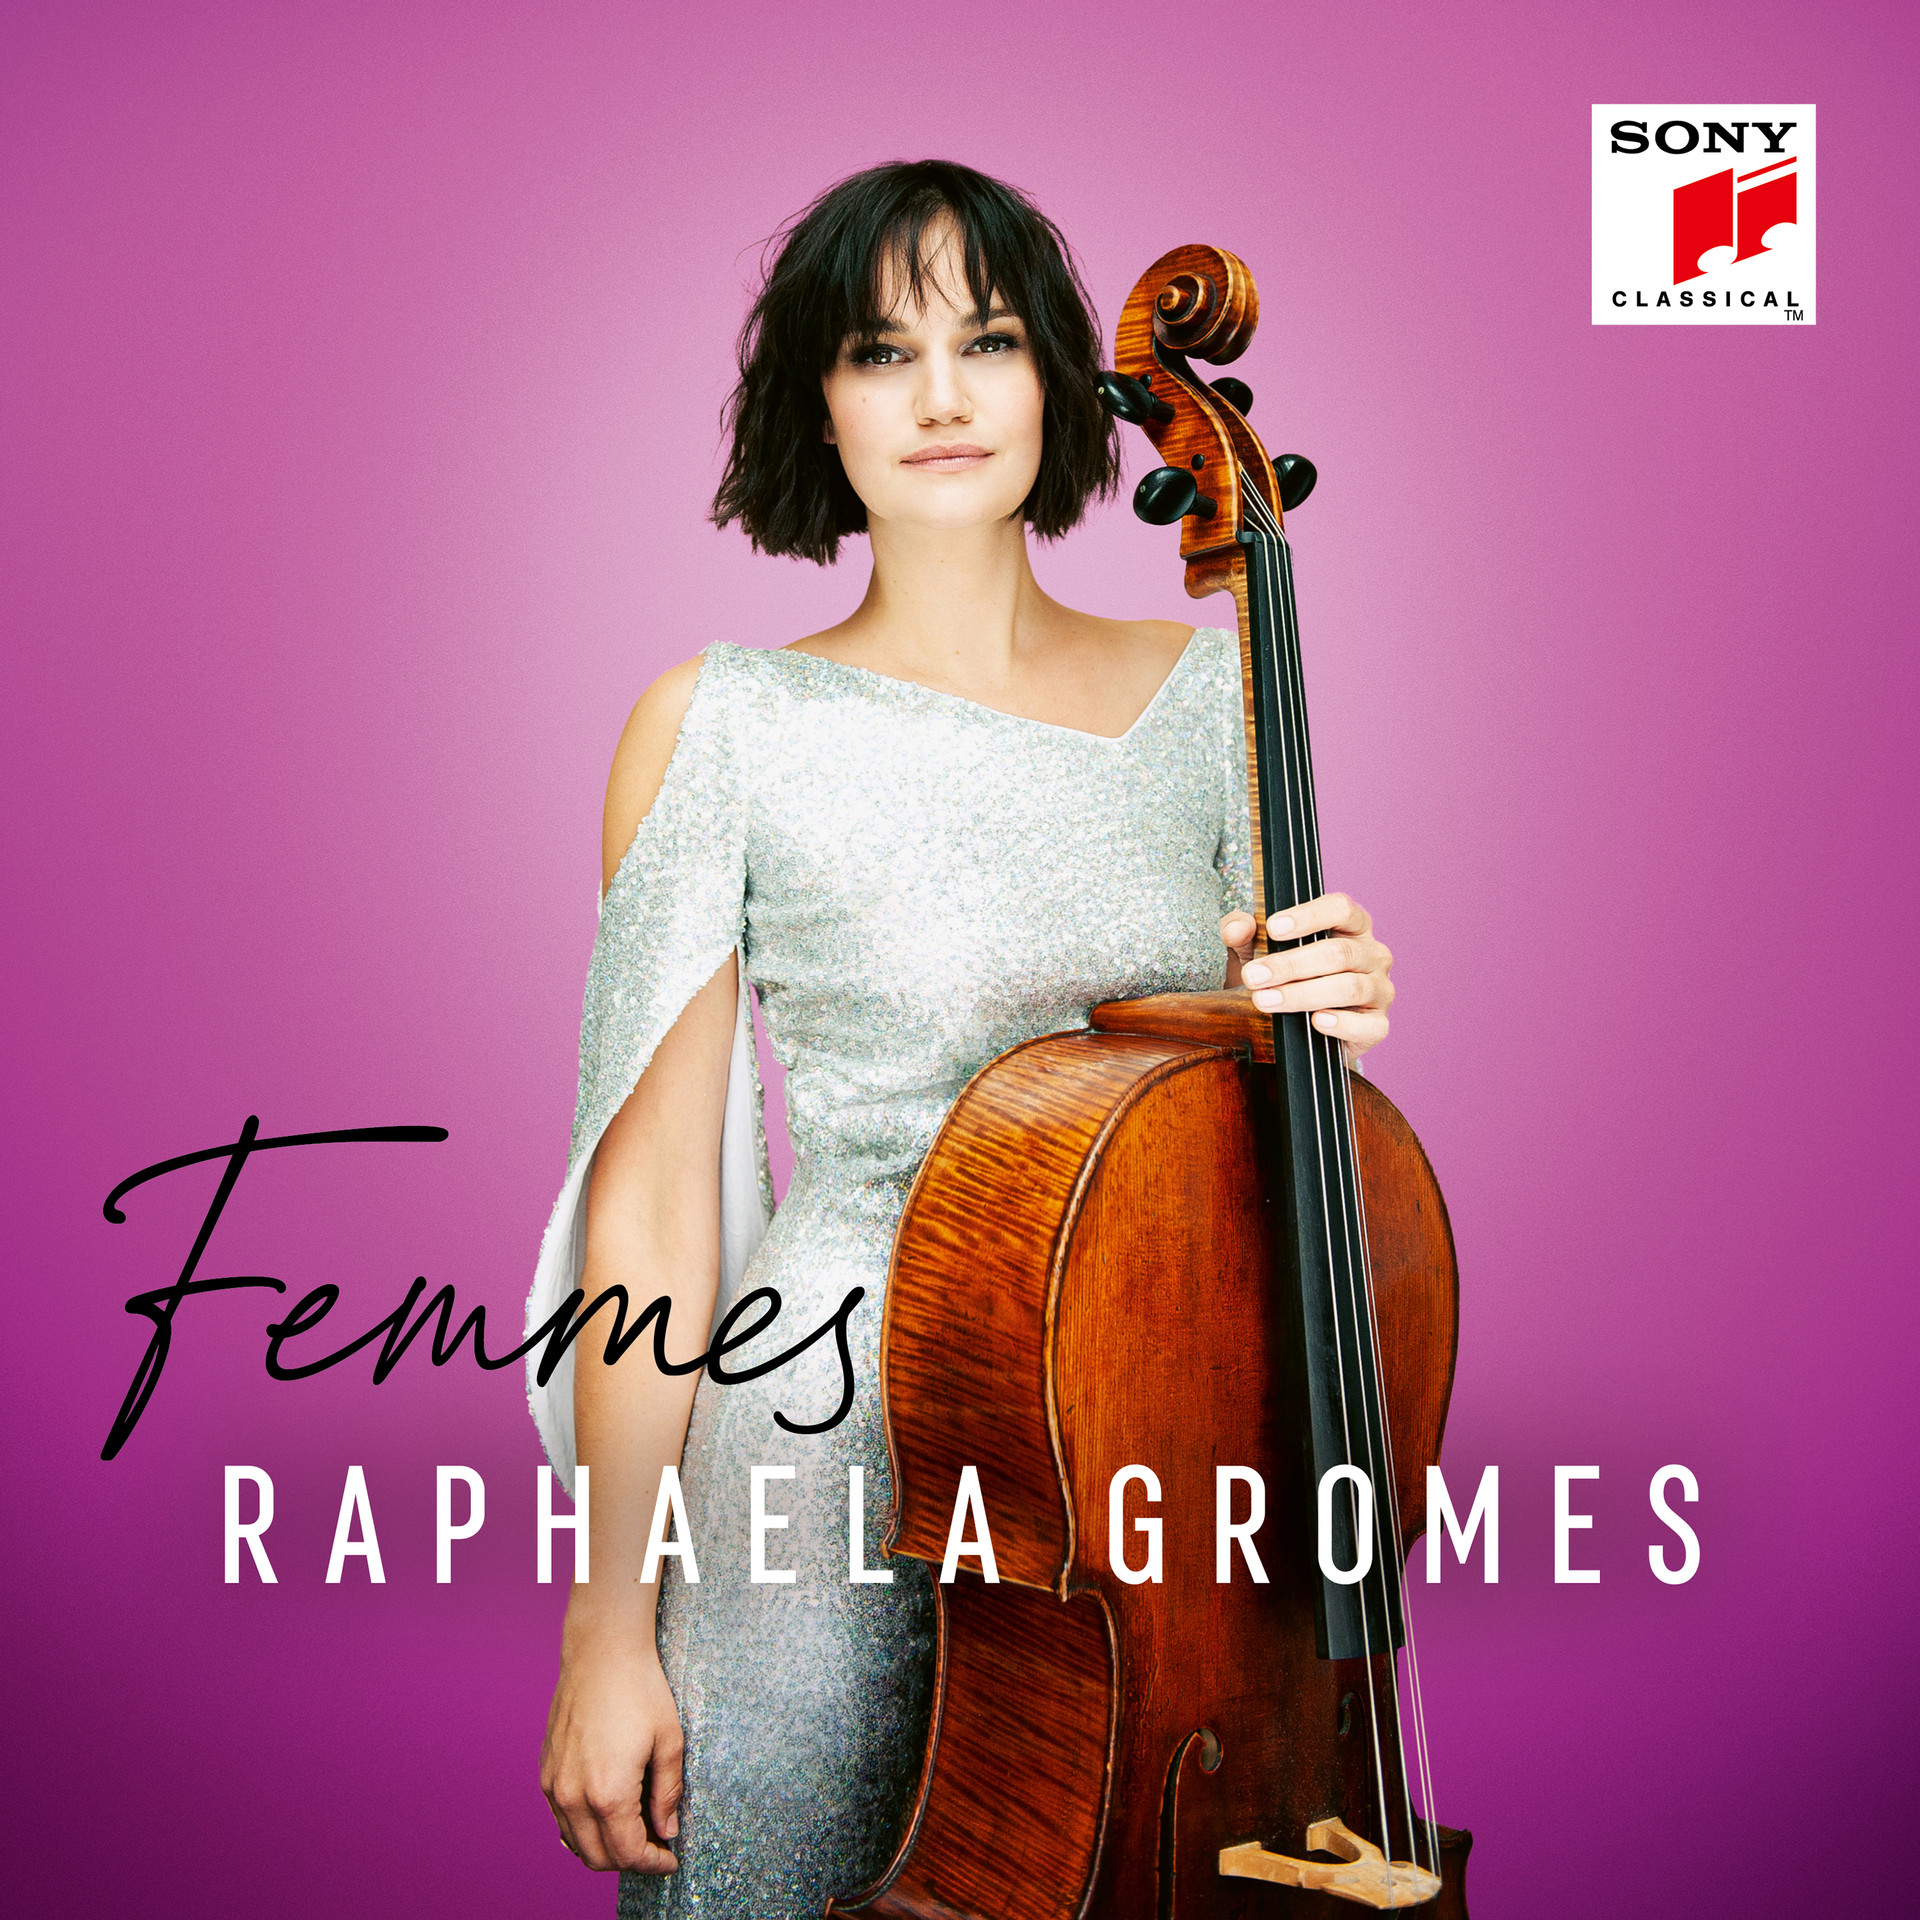 Femmes Album Cover